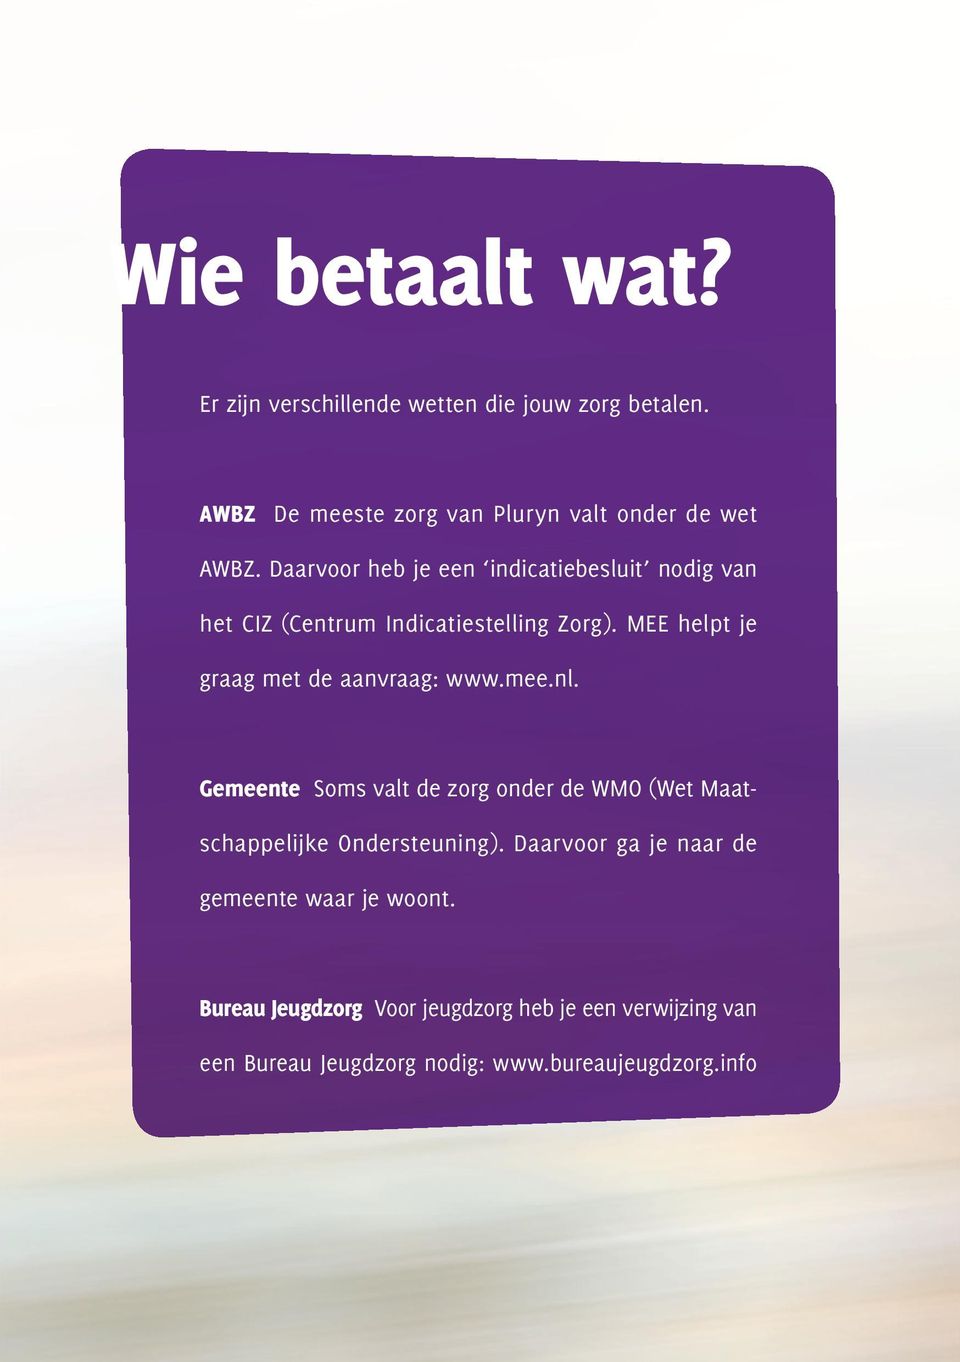 MEE helpt je graag met de aanvraag: www.mee.nl. Gemeente Soms valt de zorg onder de WMO (Wet Maatschappelijke Ondersteuning).